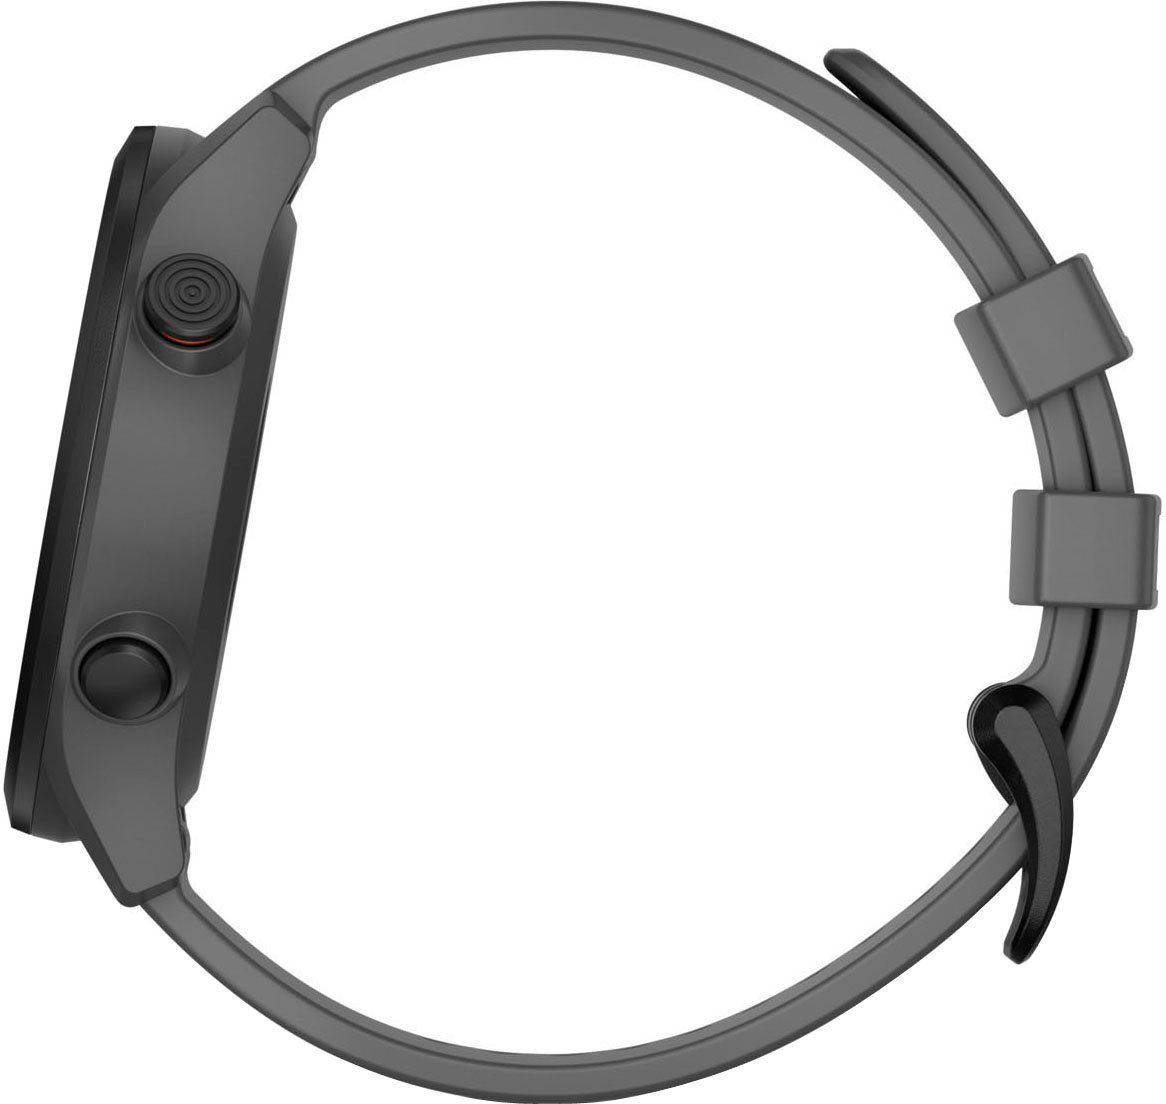 S12 grau Garmin) cm/1,3 Smartwatch grau/schwarz Edition | 2022 (3,3 Zoll, Garmin APPROACH